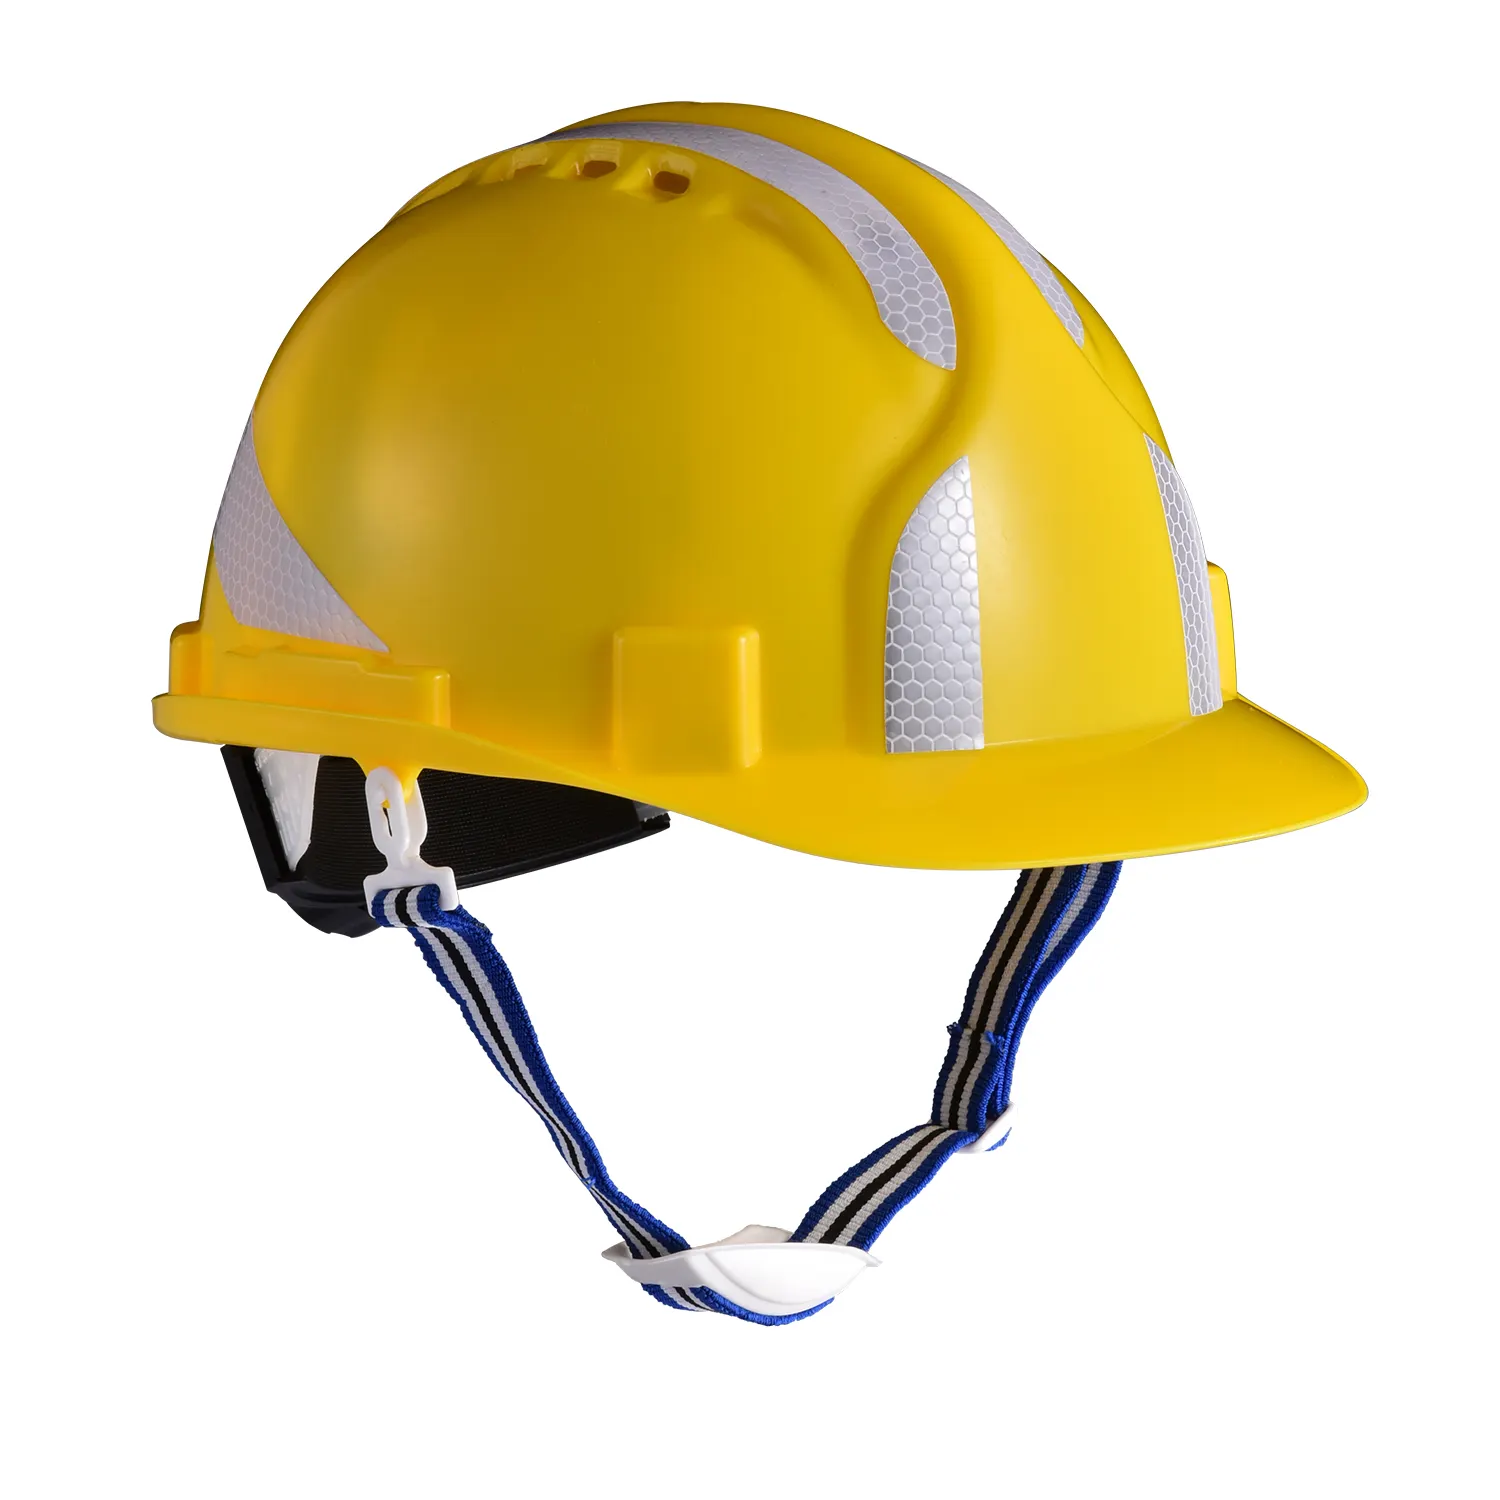 Casques de sécurité pour la Construction, casque de protection personnelle